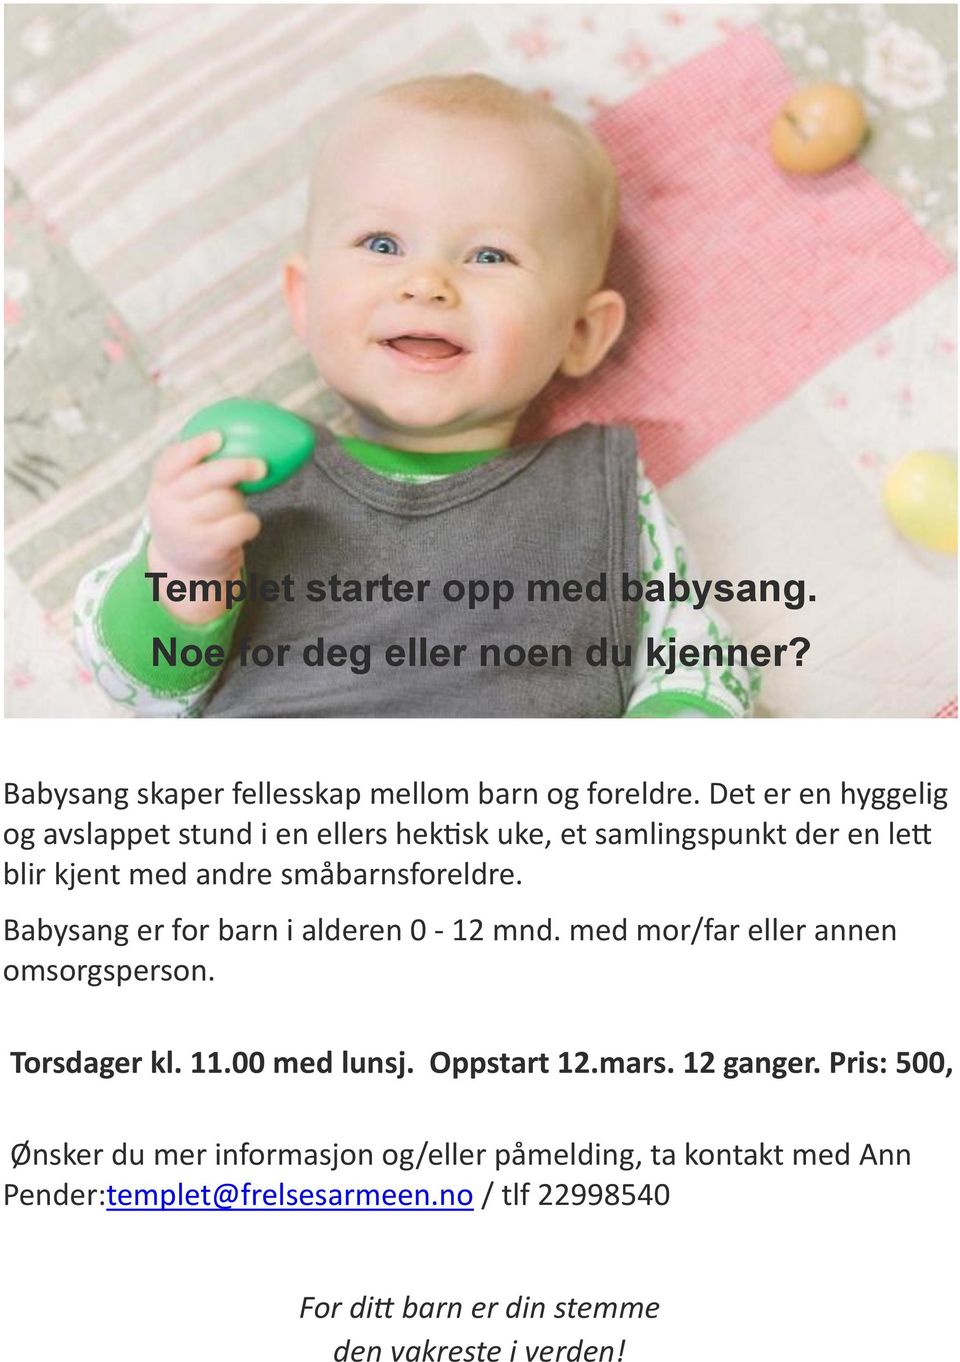 Babysang er for barn i alderen 0-12 mnd. med mor/far eller annen omsorgsperson. Torsdager kl. 11.00 med lunsj. Oppstart 12.mars. 12 ganger.